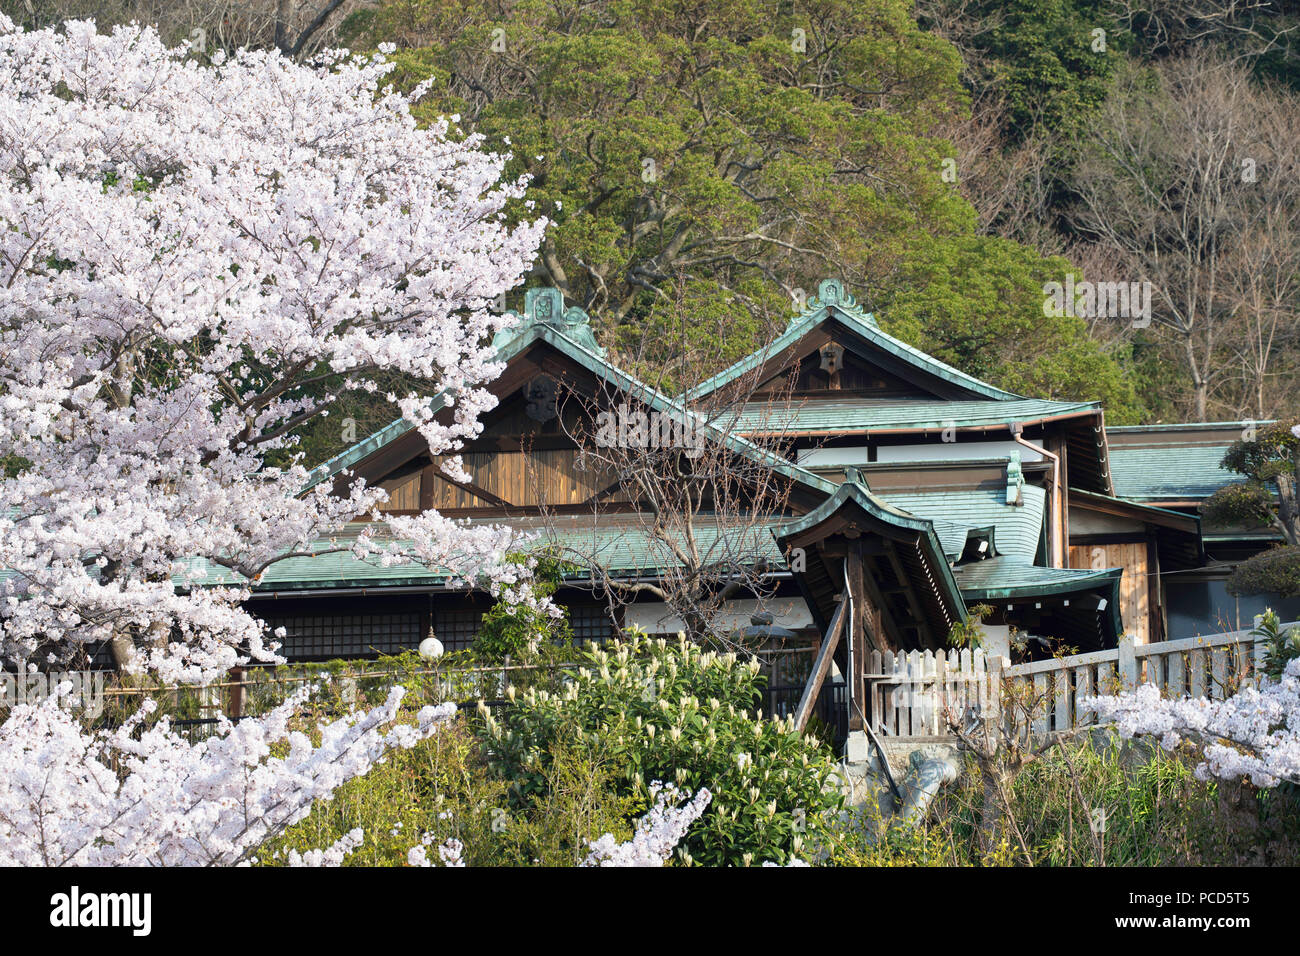 Cherry blossom at Kitano Tenman shrine, Kobe, Kansai, Japan, Asia Stock Photo